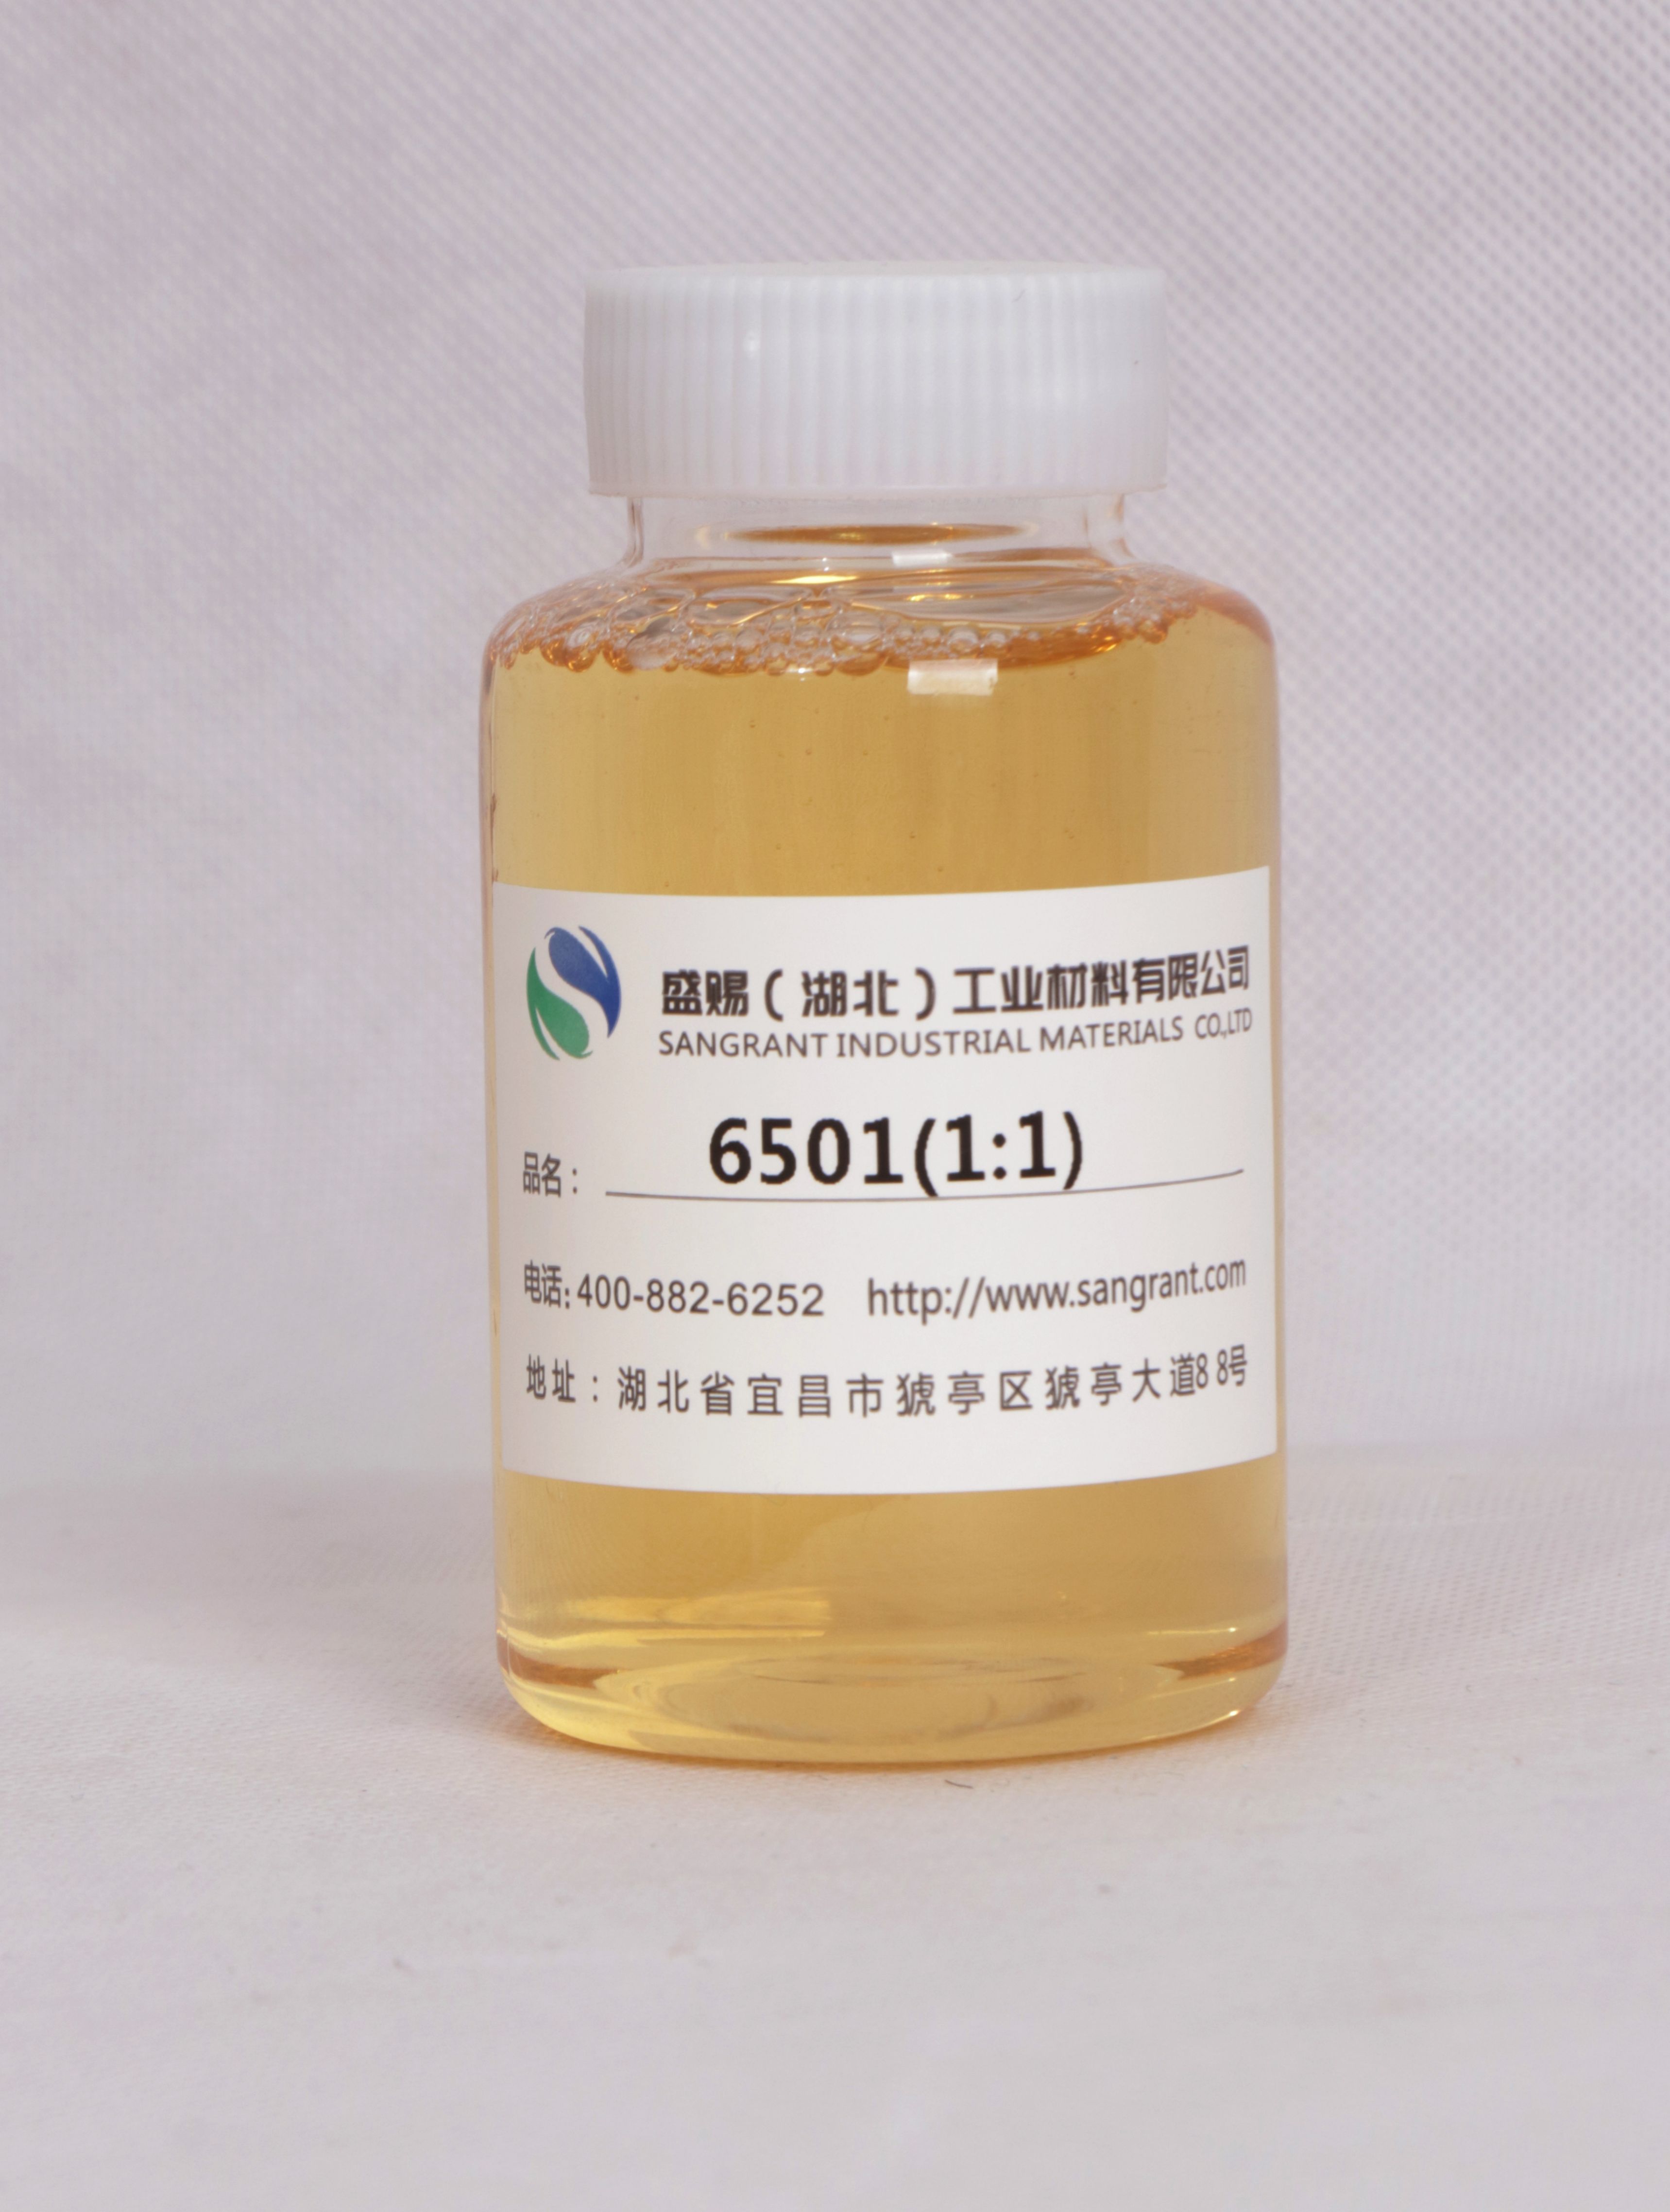 盛赐 椰子油脂肪酸二乙醇酰胺 6501 1:1 日化增稠、纺织助剂乳化剂 质量稳定